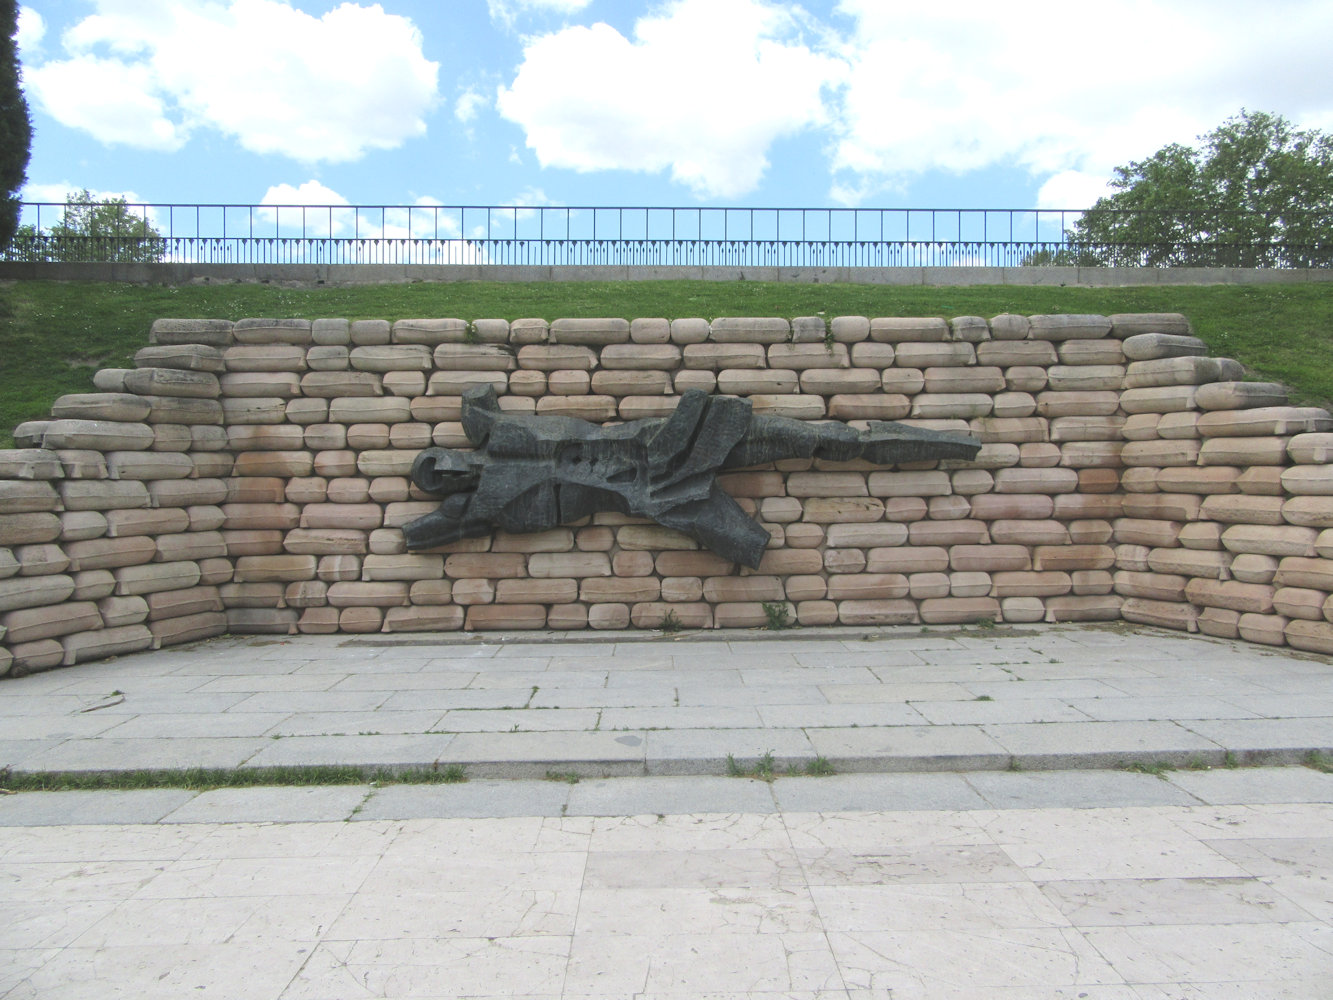 Denkmal für die Opfer in der ehemaligen Montaña-Kaserne in Madrid, 1972. Deren Soldaten hatten auf Befehl ihres den Franco-Aufständischen anhängenden Generals einen Aufstand gegen ihre republikanische Regierung versucht, der blutig niedergeschlagen wurde und etwa 700 Todesopfer forderte